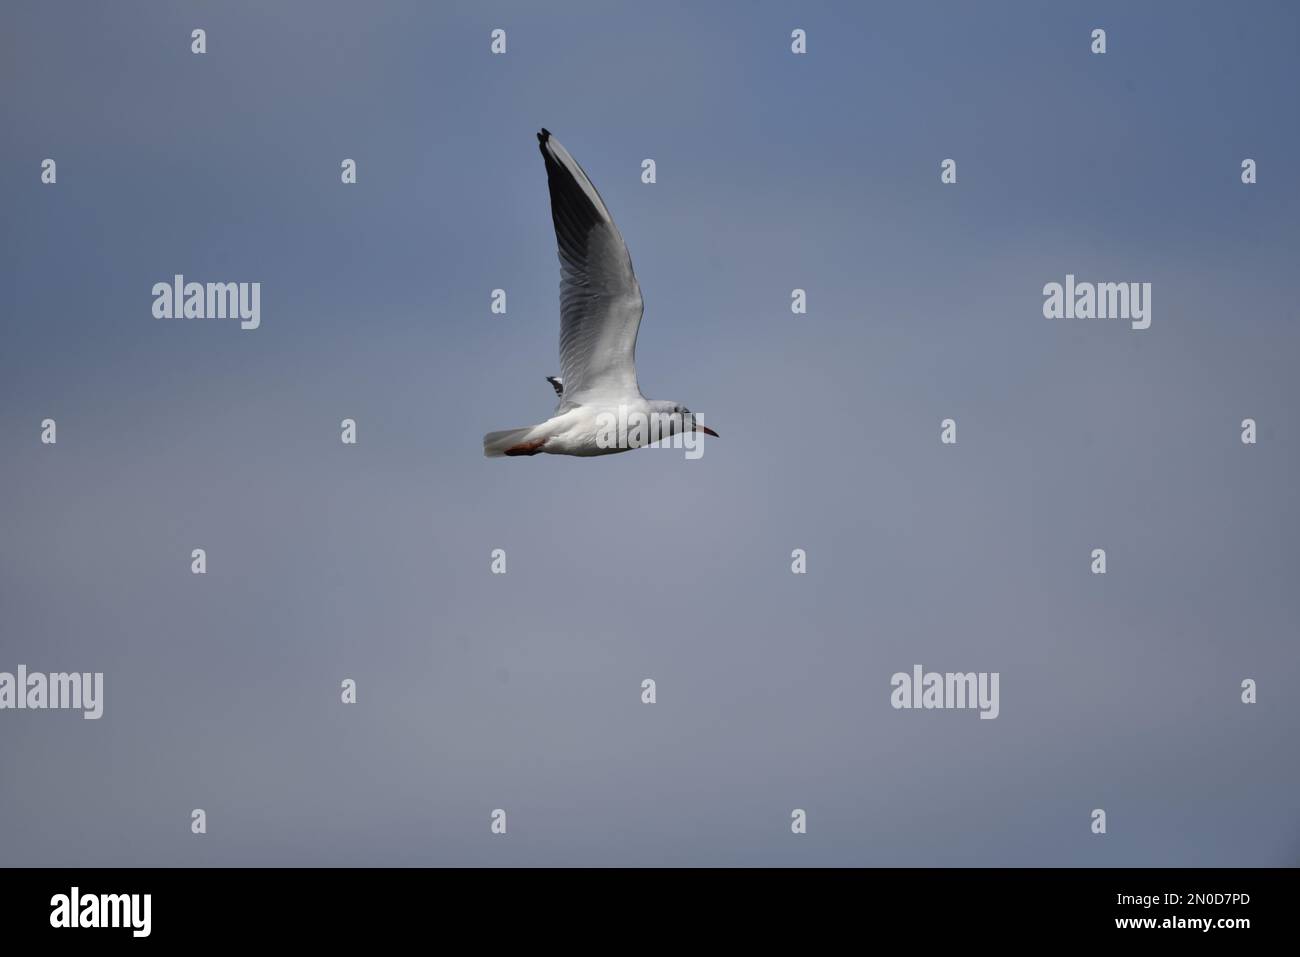 Winter Plumaged Black-Head Gull (Chroicocephalus ridibundus) fliegt von links nach rechts mit Wings Open Up, Top Centre of Image, gegen einen blauen Himmel in Großbritannien Stockfoto